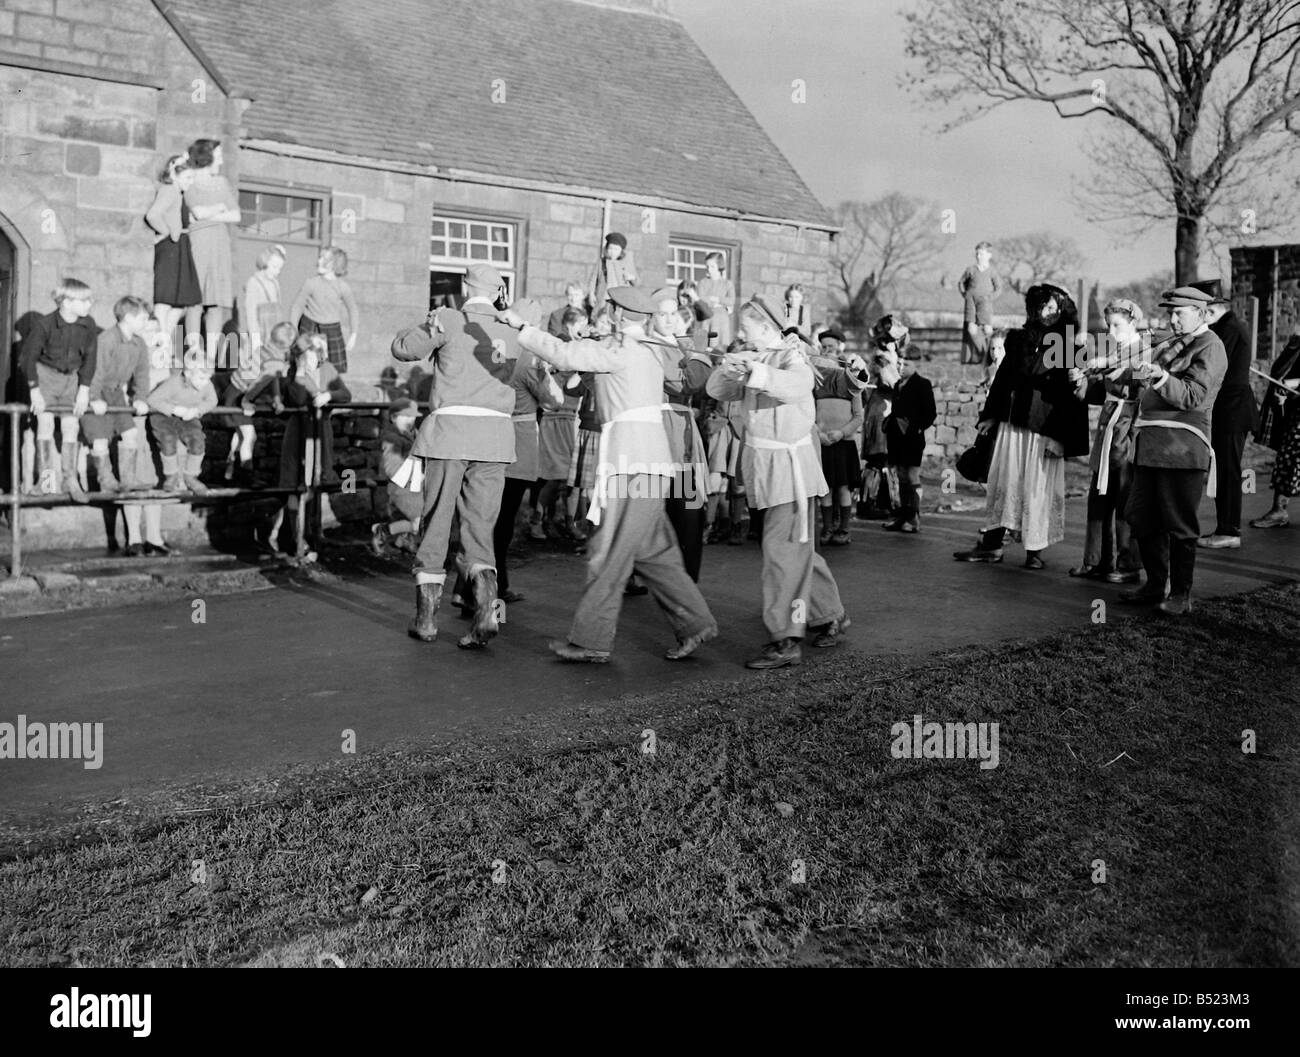 Goathland Plough Stots Yorkshire County dance team performing ancienne cérémonie de danser devant chaque maison dans village de Goatland, Yorks. La Charrue Goathland Stots sont un rare exemple d'une tradition rurale autrefois répandue qui a reconnu l'importance de la charrue et célébré avec sword danse, musique et théâtre folkloriques. Traditions similaires ont déjà existé dans d'autres parties de Yorkshire, Lincolnshire, Derbyshire et Northumberland, où ils étaient connus sous le nom de "garçons de charrue', 'Taureau Lads', 'Ploo avocats adjoints' Jacks (charrue) et le 'fond' de charrue ou fou. Janvier 1950 022214/2 Banque D'Images